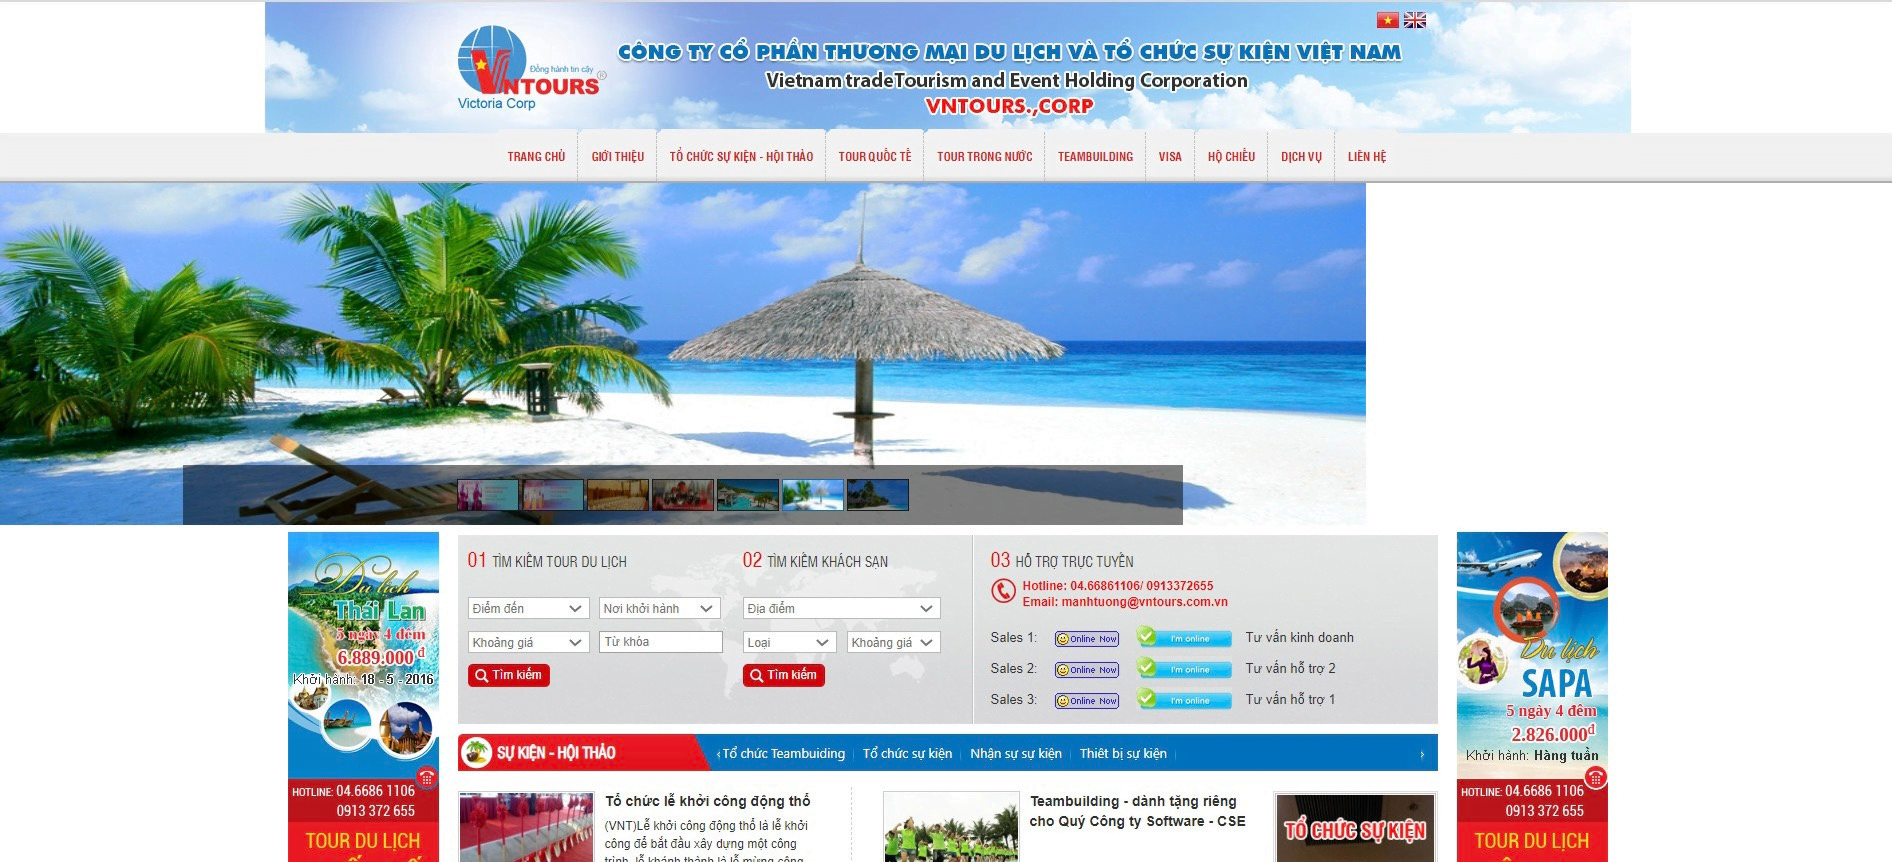 Website Công ty CPTM du lịch và tổ chức sự kiện Việt Nam